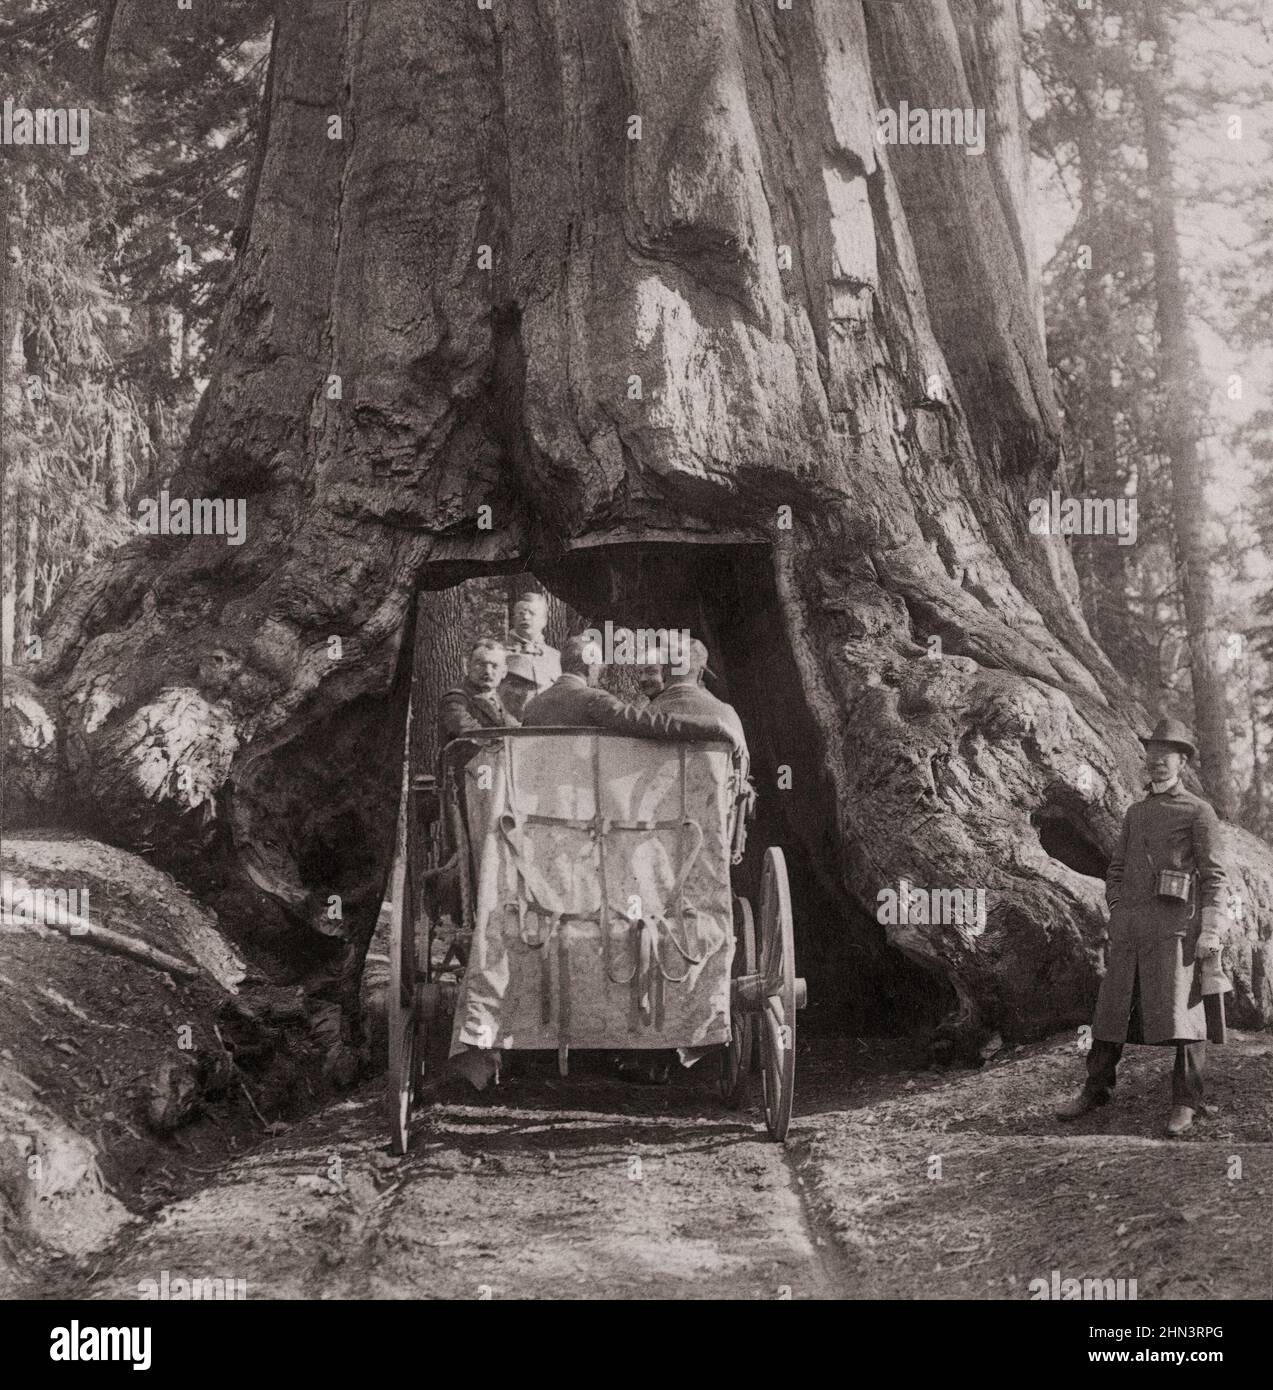 Photo d'époque du président Roosevelt au milieu des « merveilles de la nature » - en traversant Wawona, Big Trees de Californie. ÉTATS-UNIS. Juillet 1903 Banque D'Images